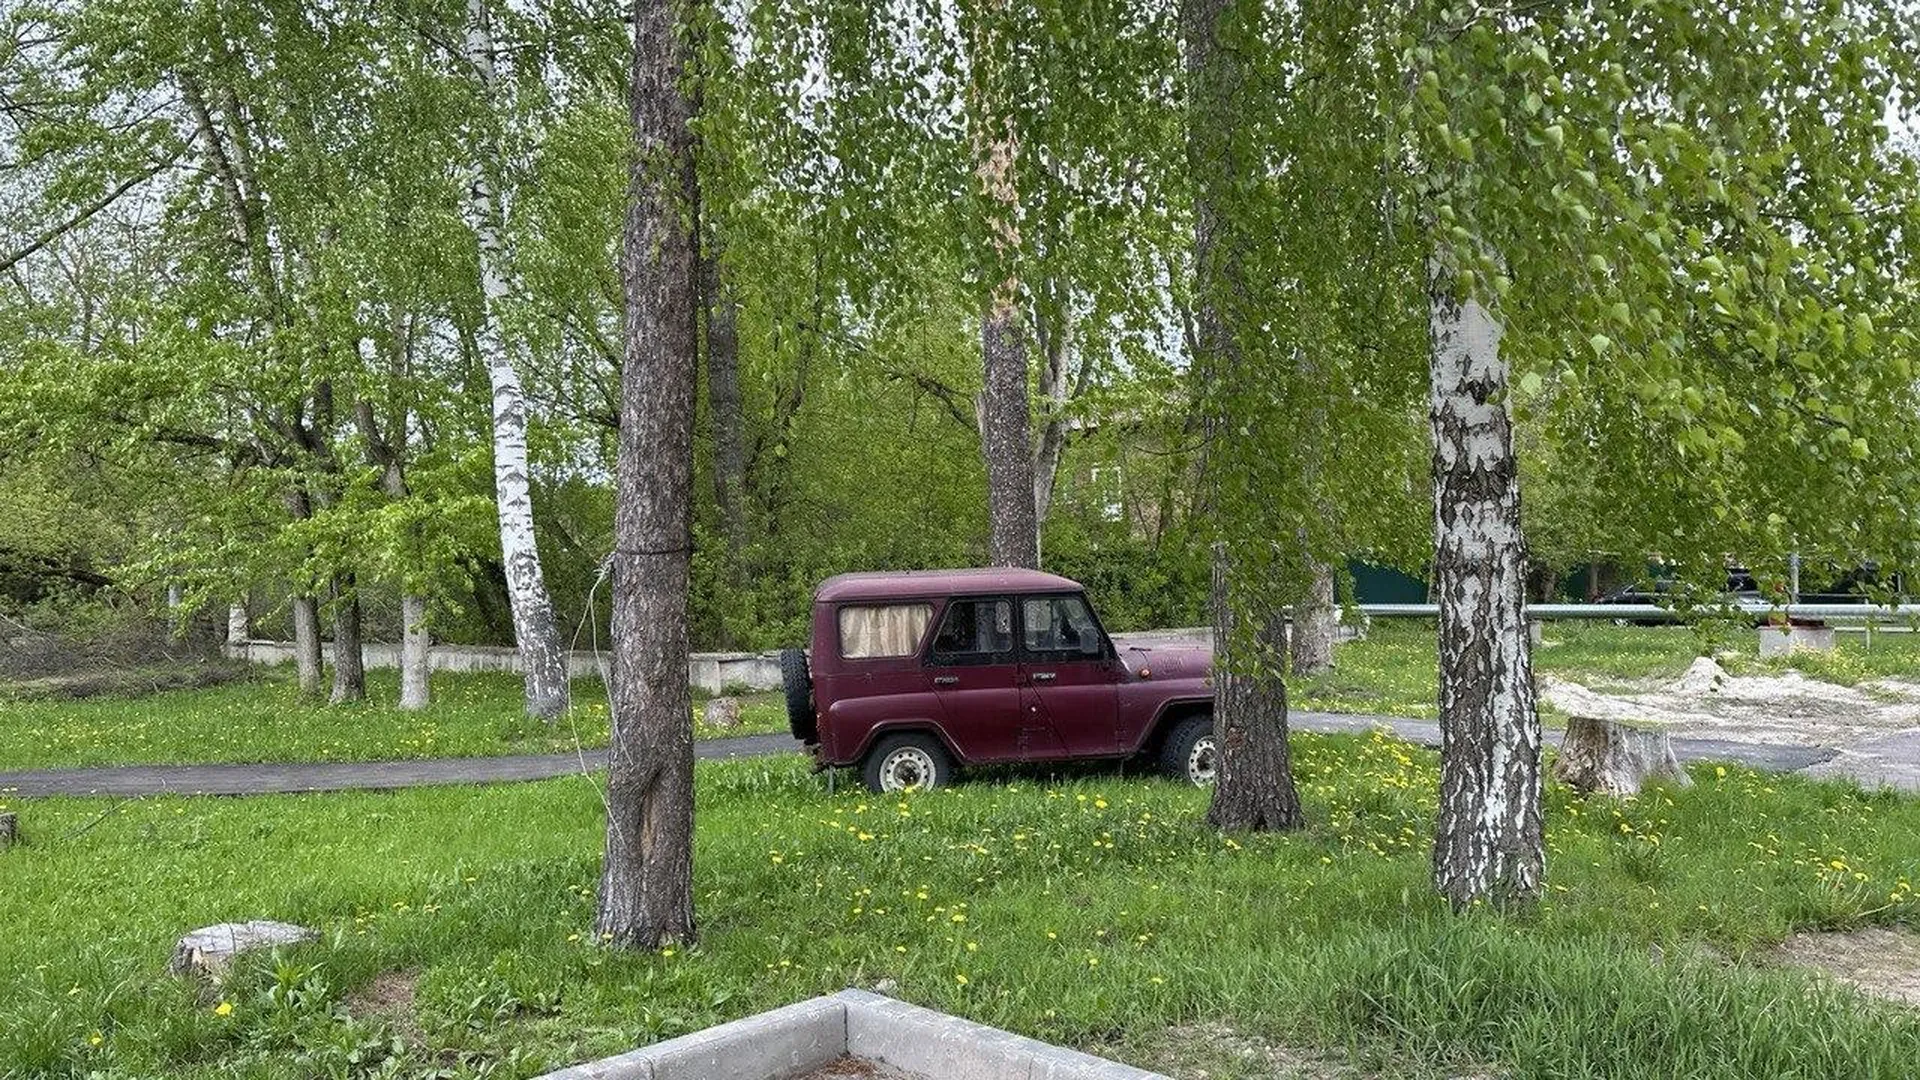 Юрист Кузнецов рассказал, куда жаловаться на нарушителей правил парковки